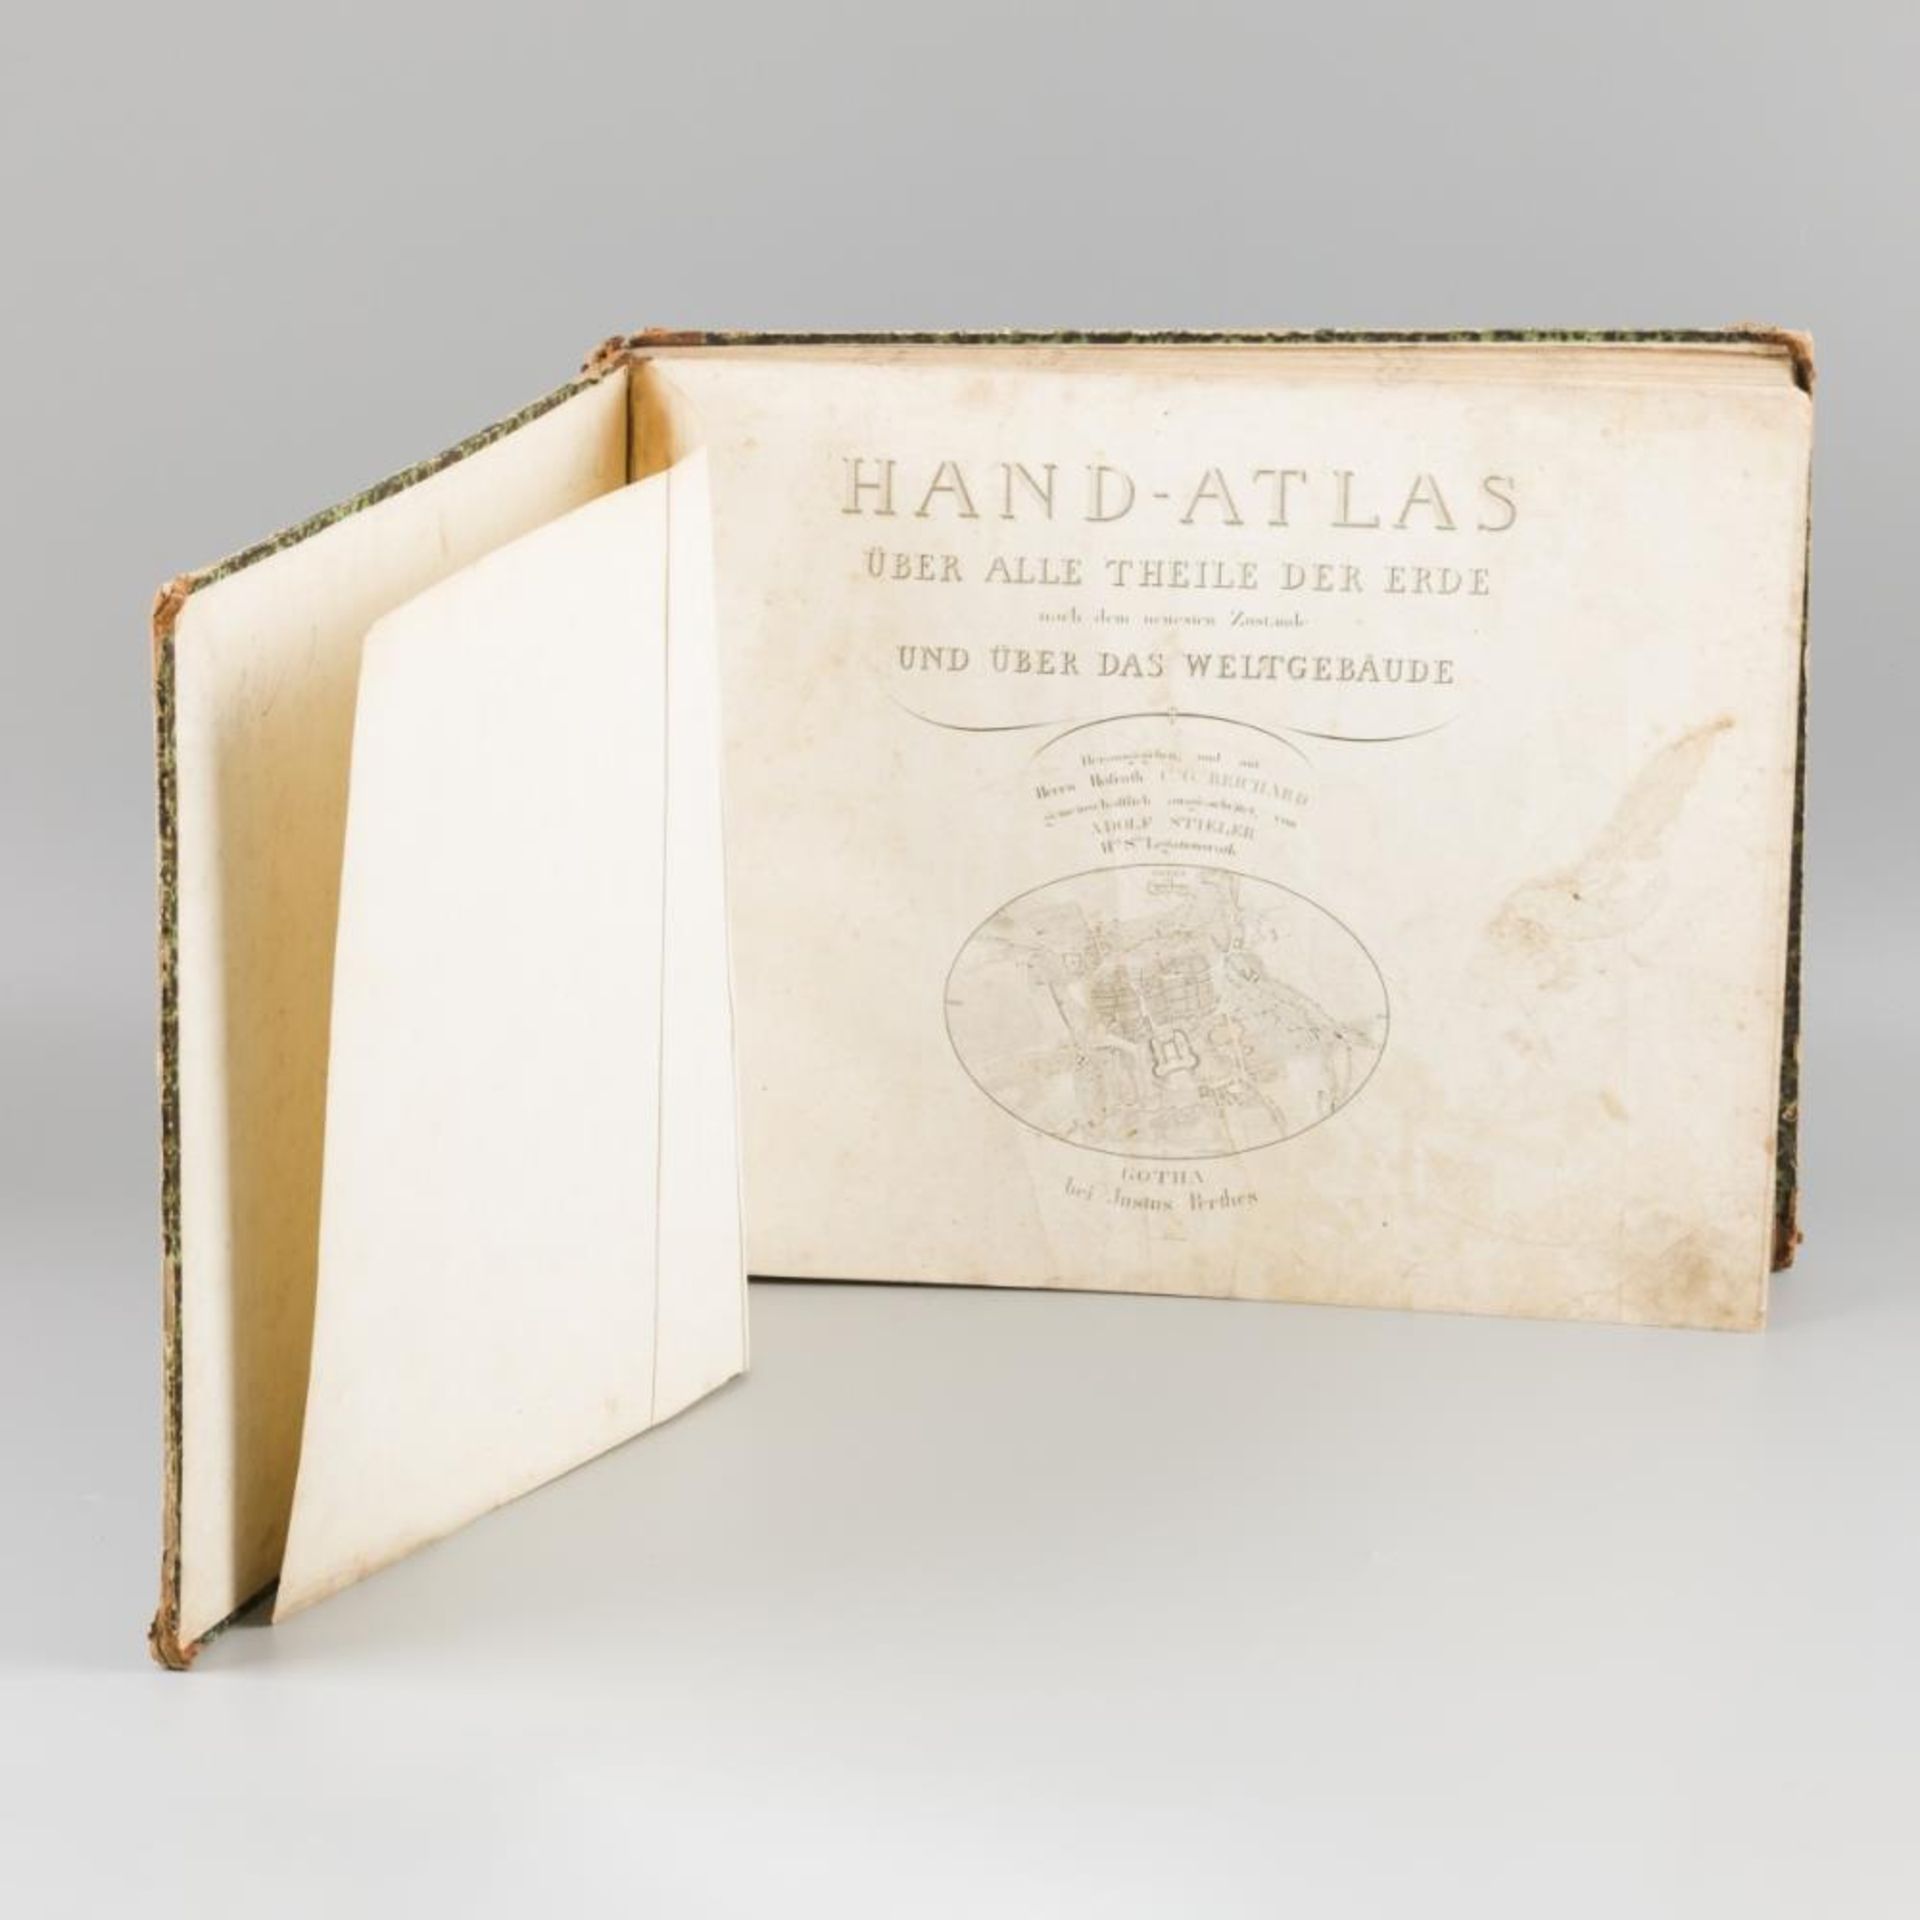 Stielers Hand-atlas (after Adolf Stieler, 1775–1836), "Hand-Atlas über alle Theile der Erde und über - Image 2 of 6